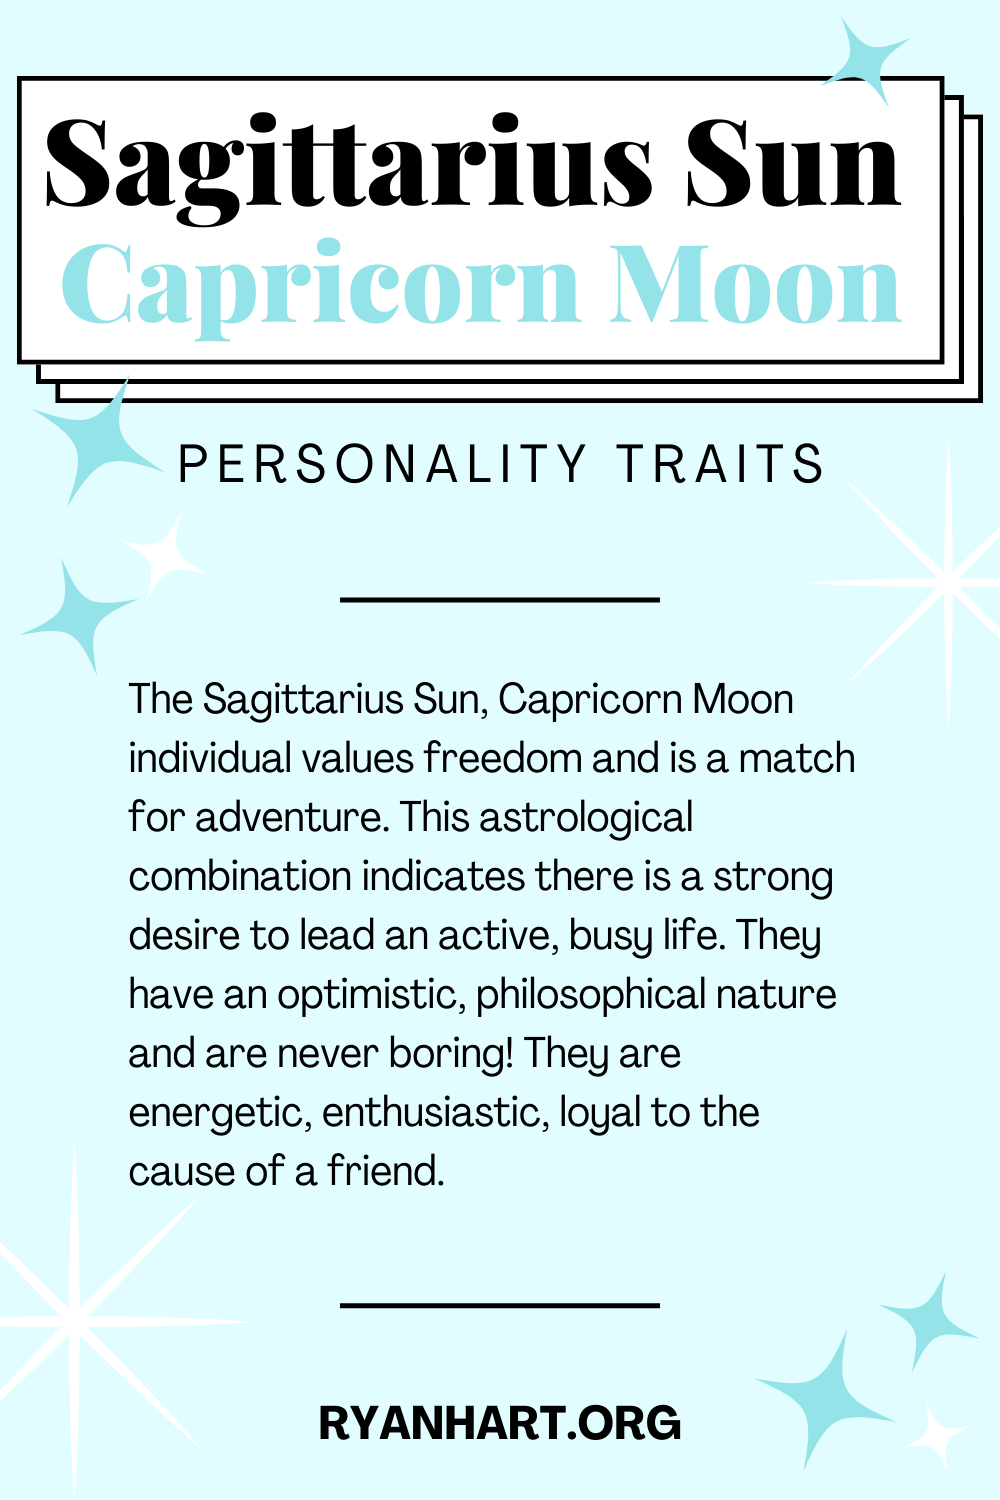  Ciri-ciri Personaliti Sagittarius Sun Capricorn Moon